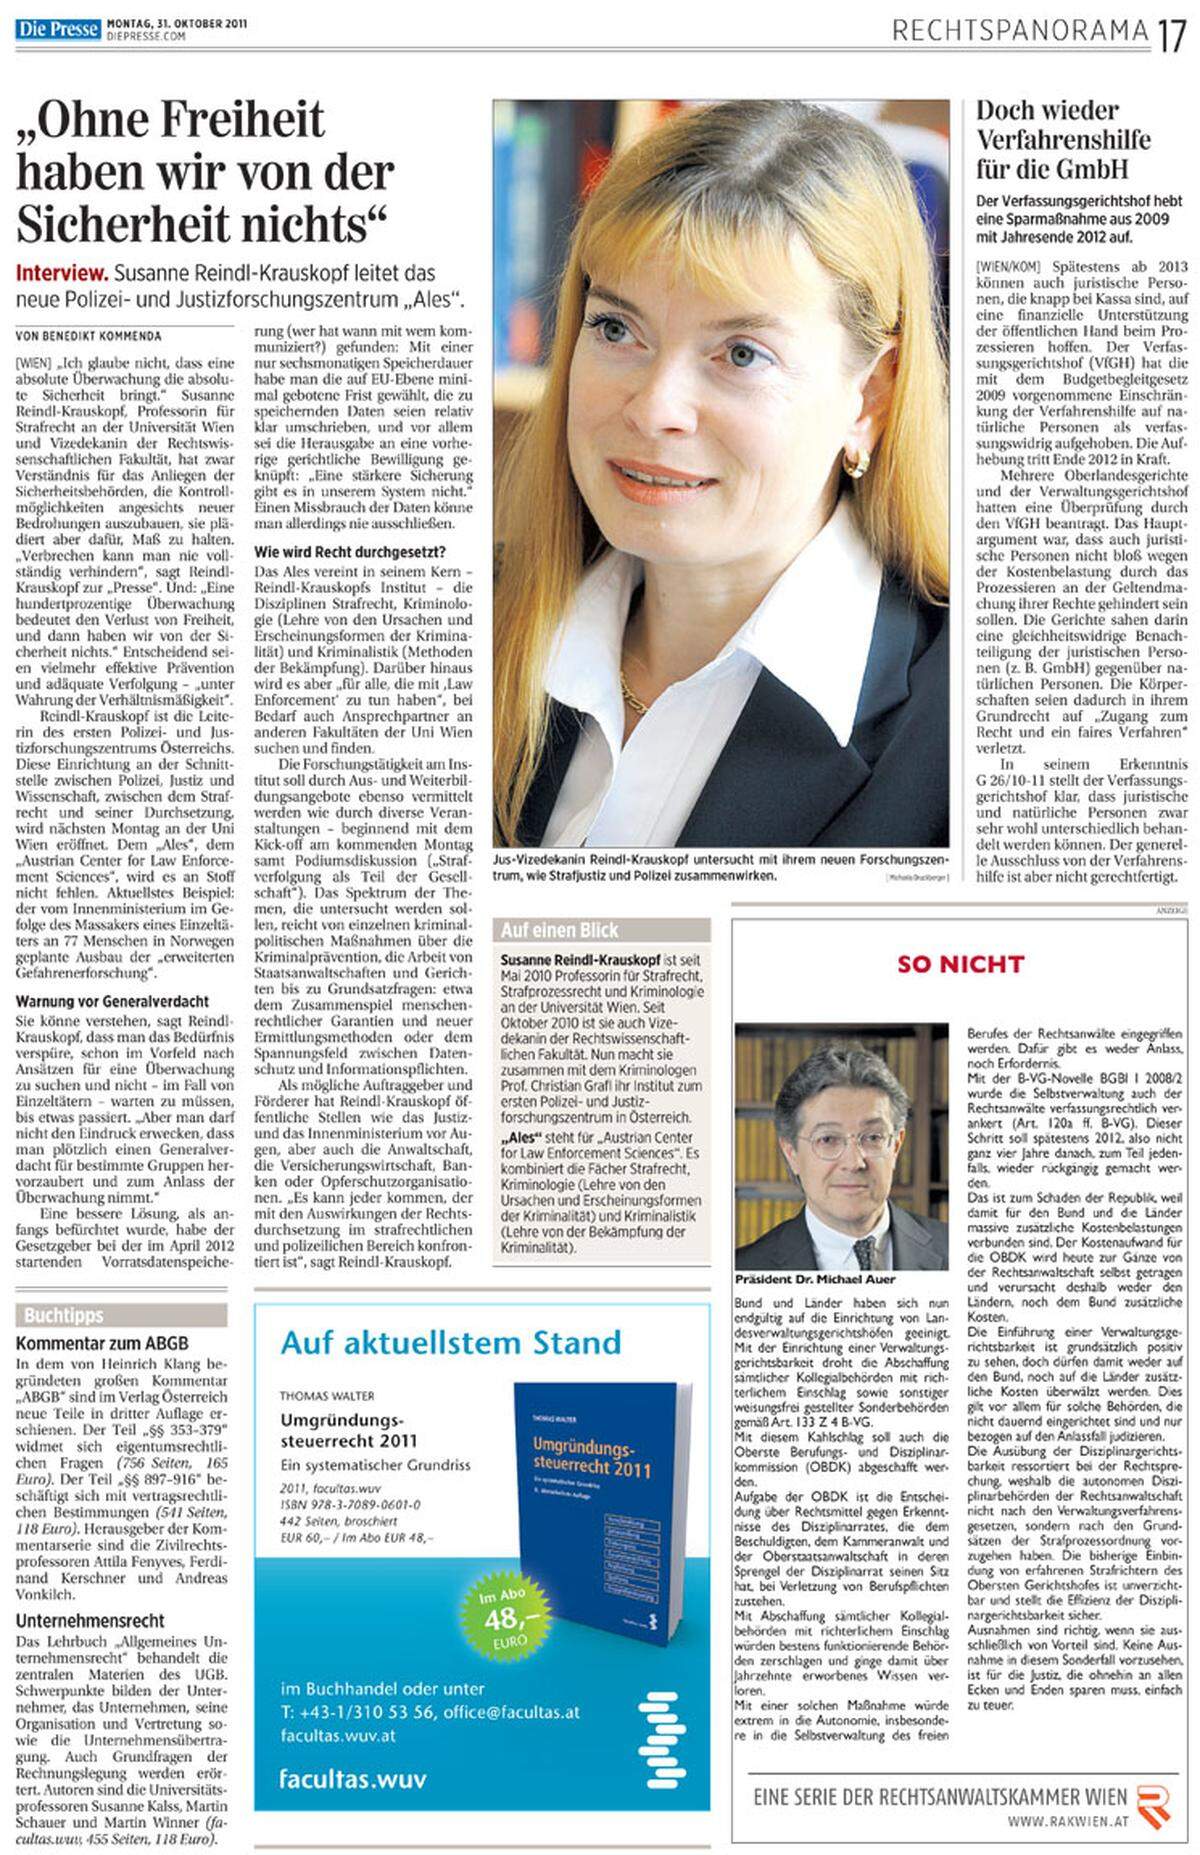 31. Oktober 2011: Die Strafrechtsprofessorin Susanne Reindl-Krauskopf, damals Vizedekanin der Wiener Jusfakultät, warnt vor einem Zuviel an Überwachung.